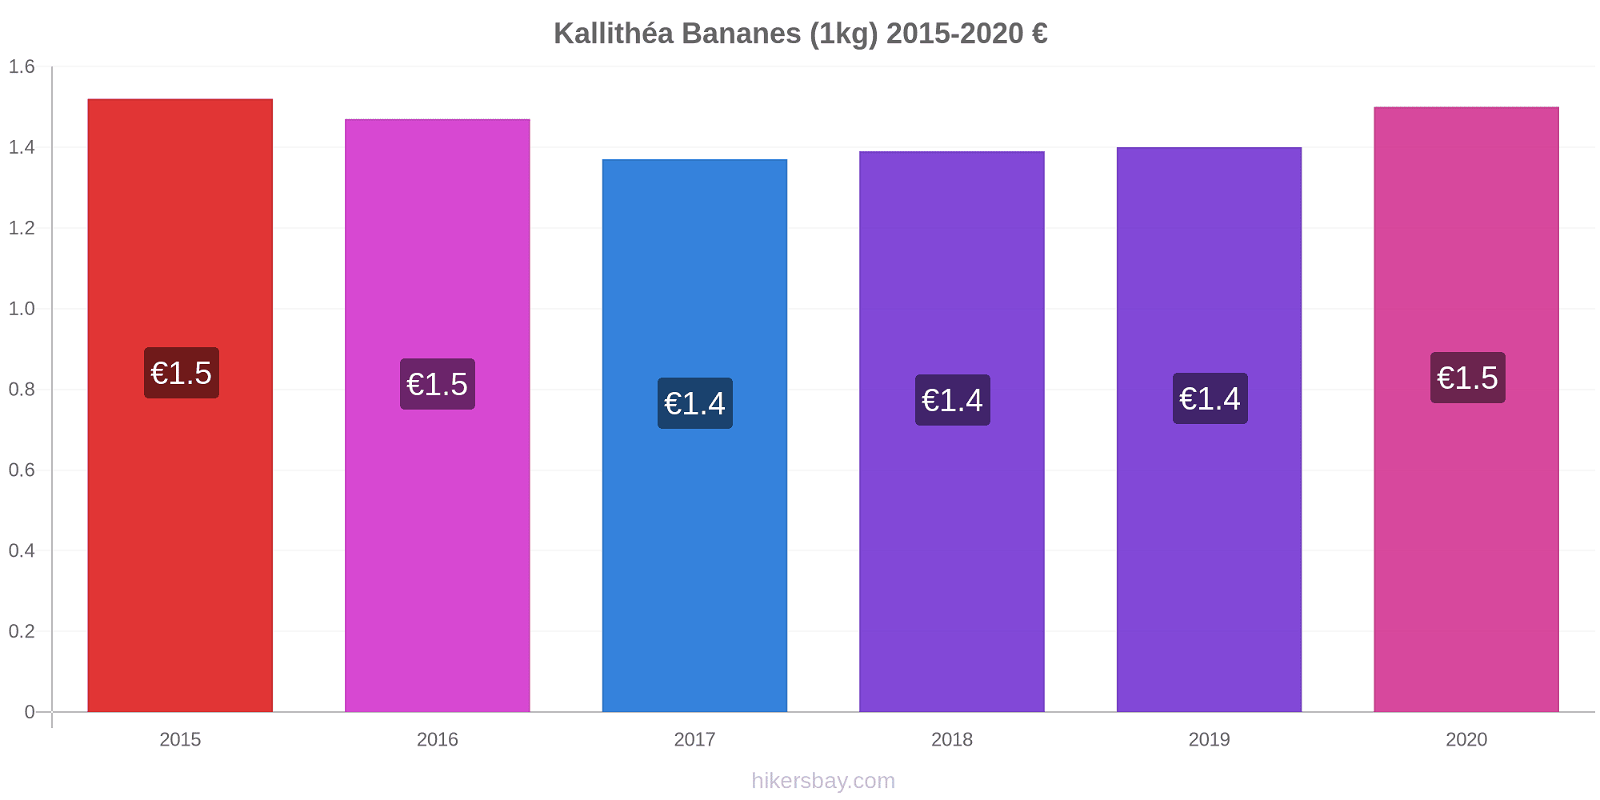 Kallithéa changements de prix Bananes (1kg) hikersbay.com